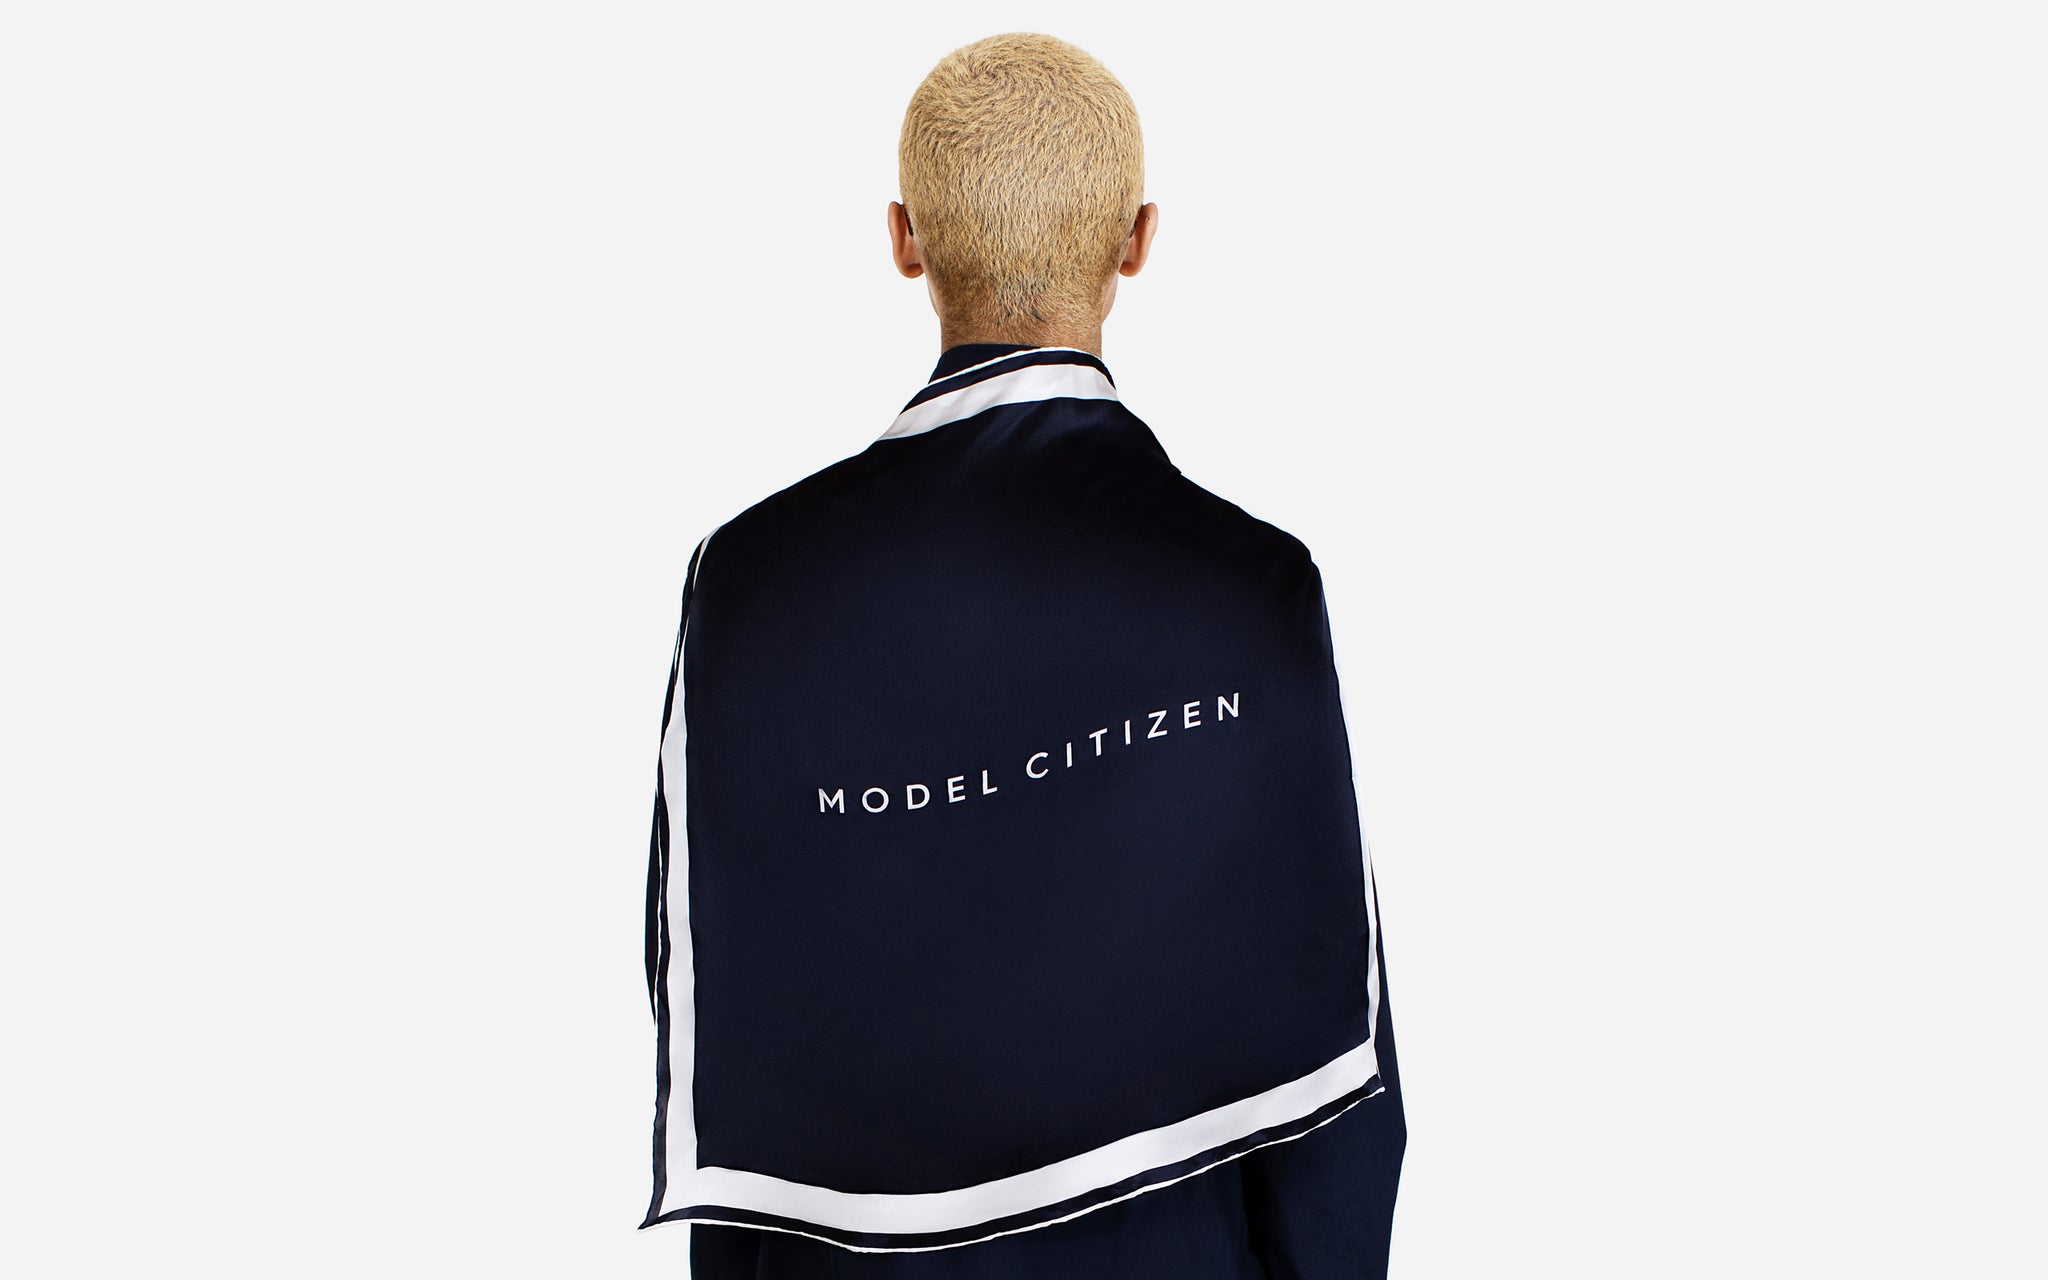 Model Citizen - Australian Luxury Streetwear Fashion Menswear Designer